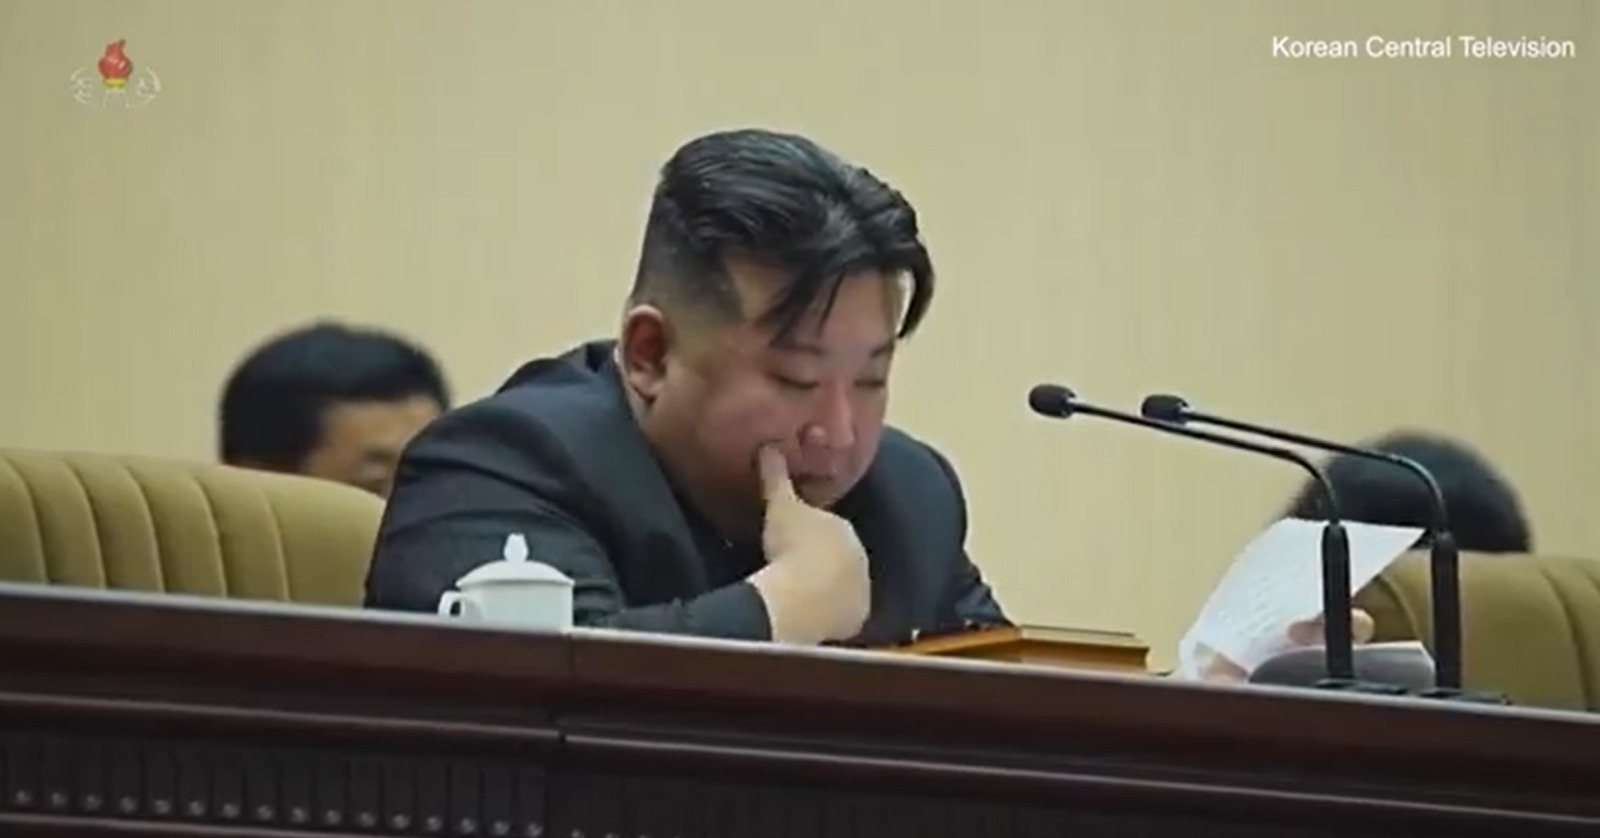 زعيم كوريا الشمالية يبكي